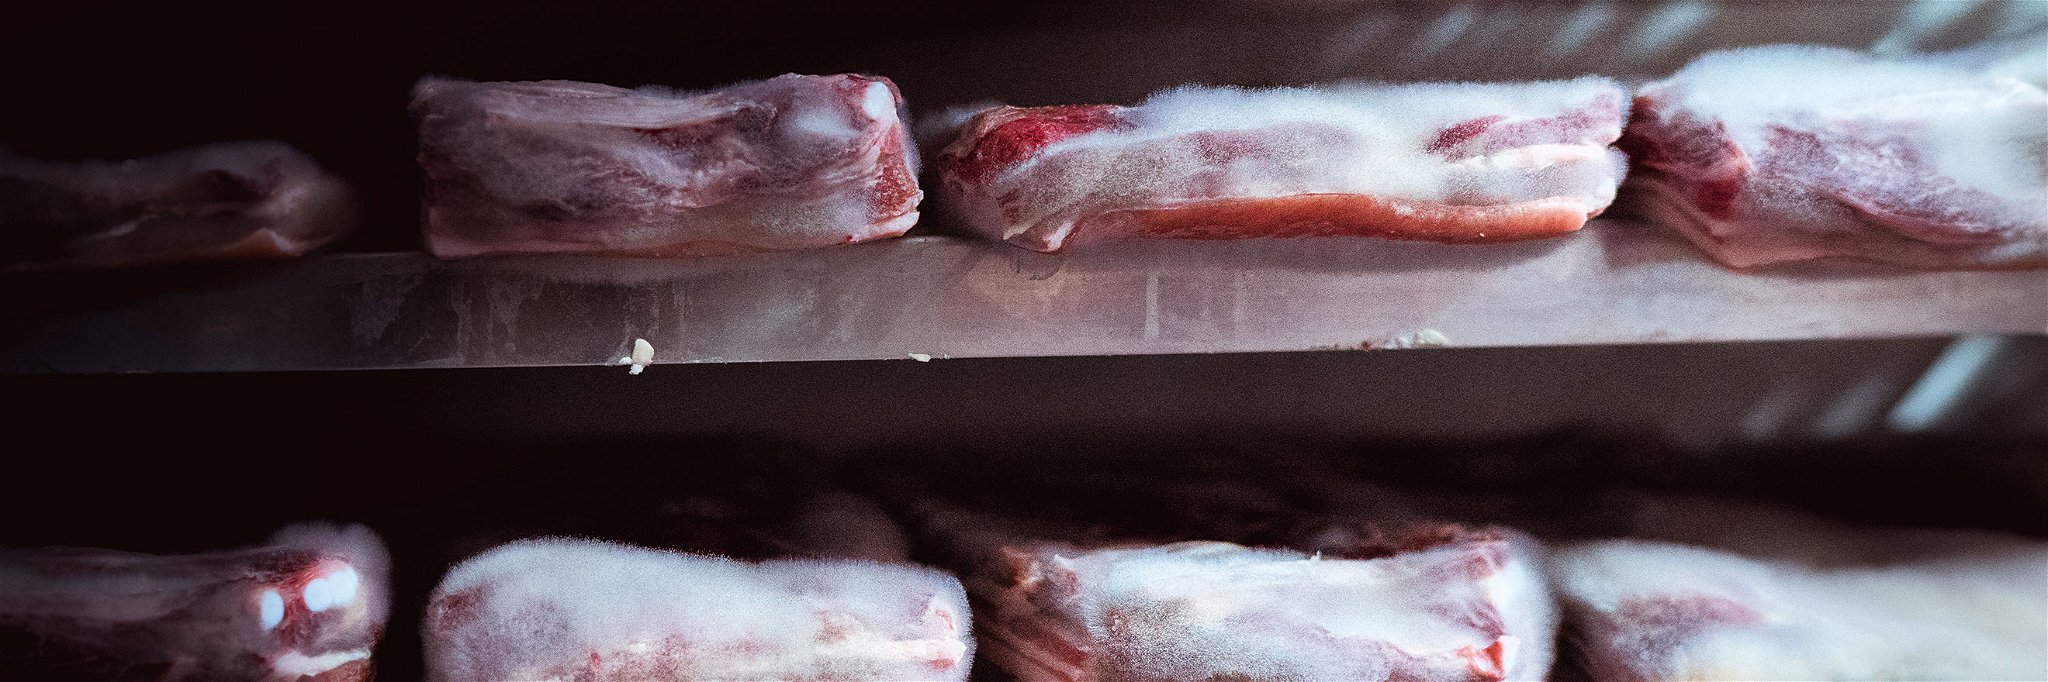 Höchste Fleischqualität dank Edelschimmel. Bei Luma reift das Fleisch Wochen unter einem dichten Pelz. 